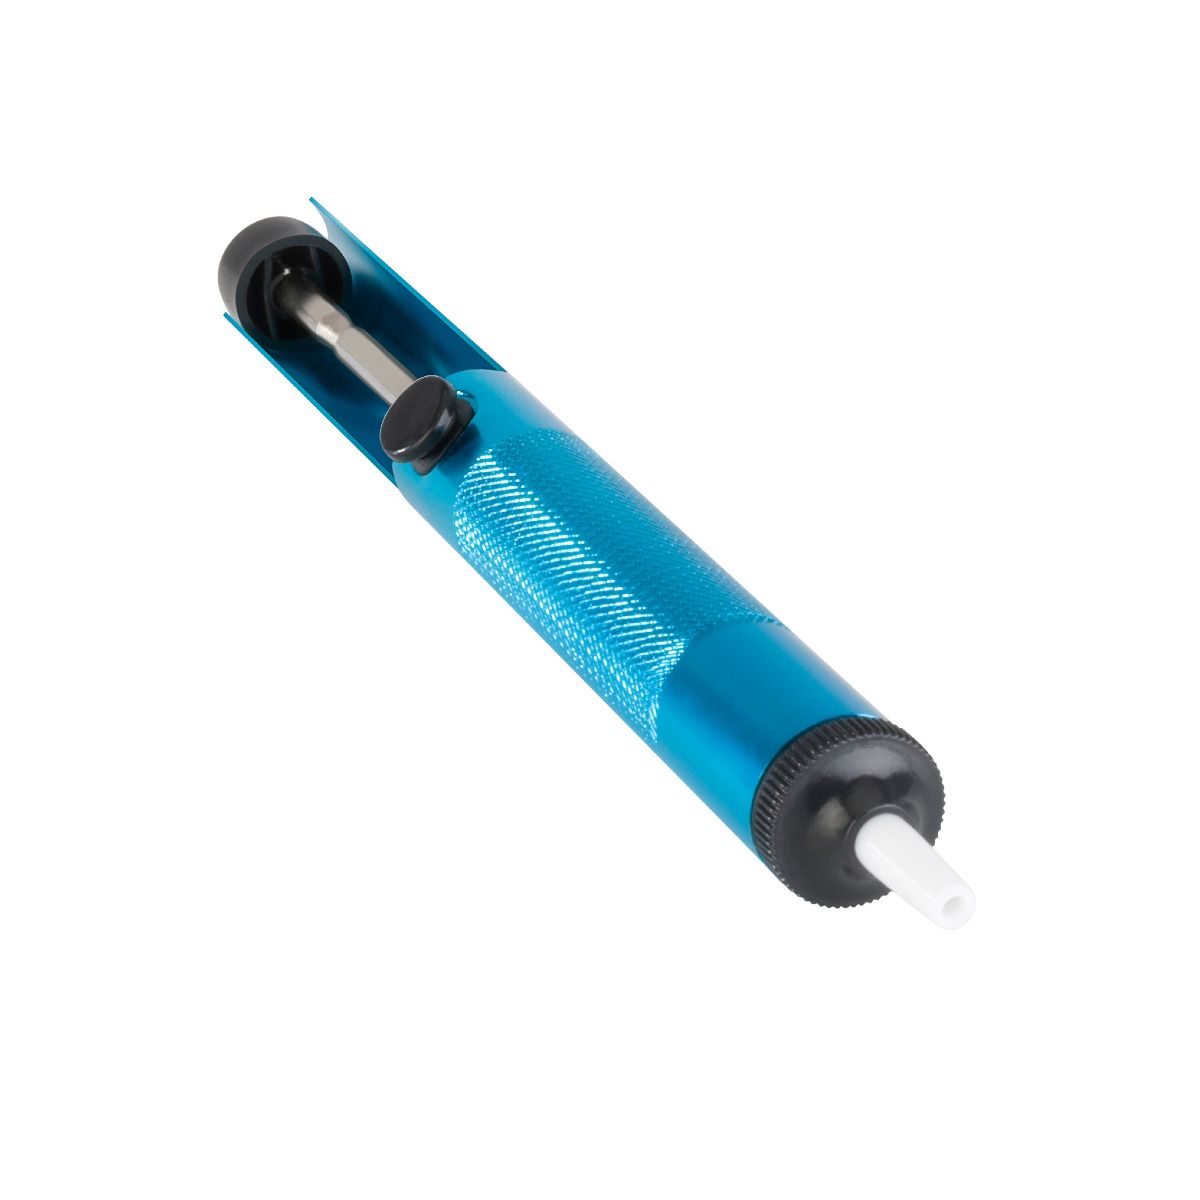 PLIMPO desoldador de estaño con boquilla antiestática limpiador de  soldadura medidas: 170 mm